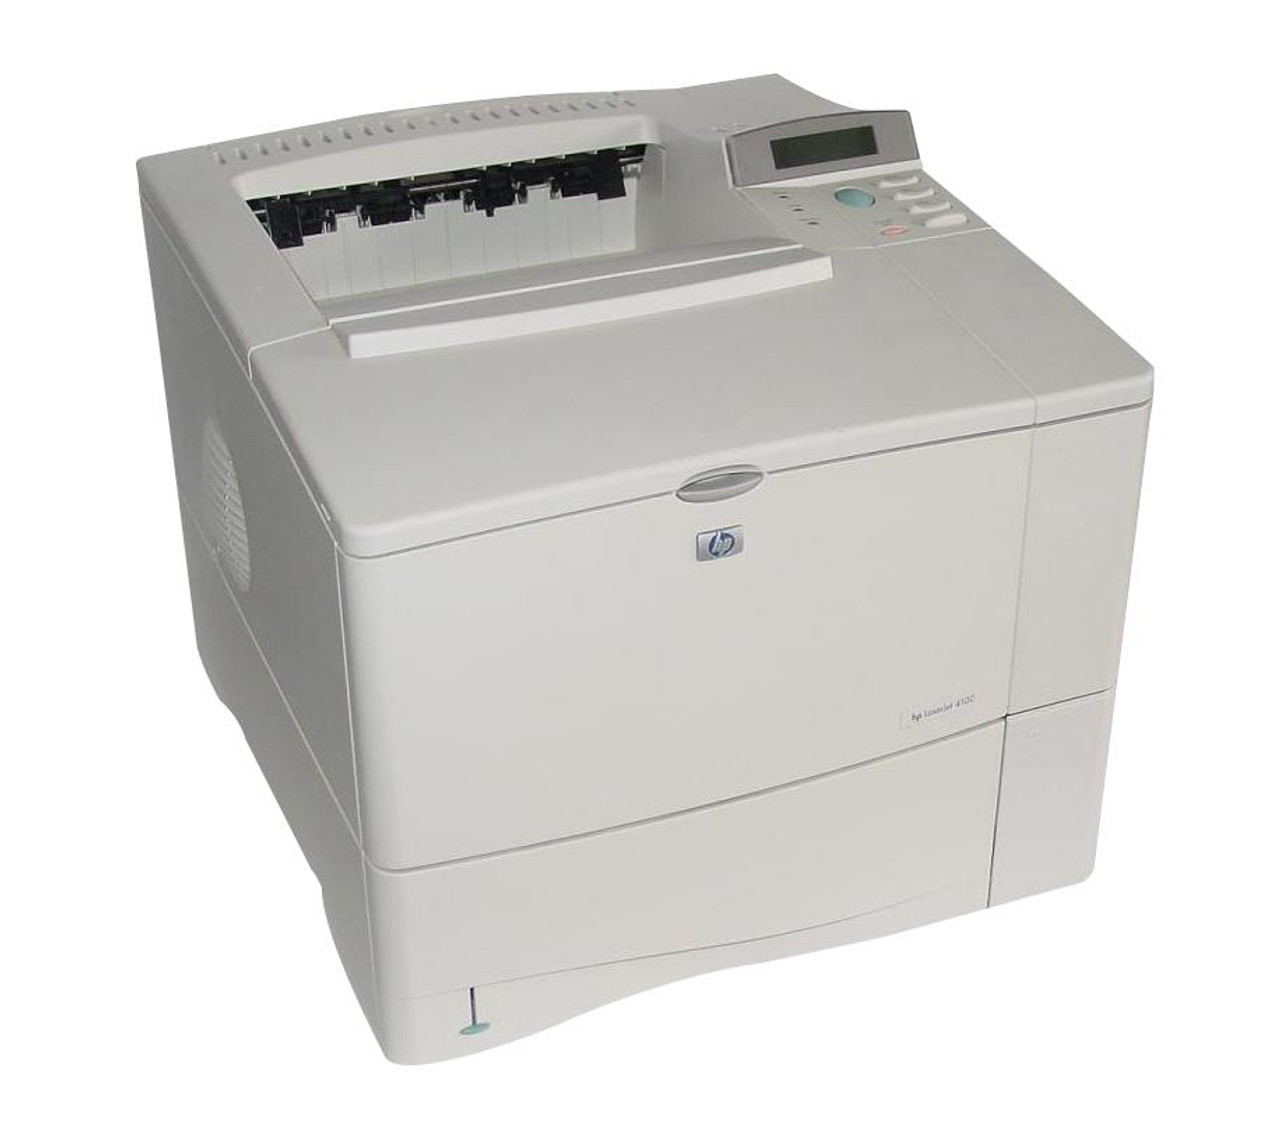 LaserJet 4100 Printer series